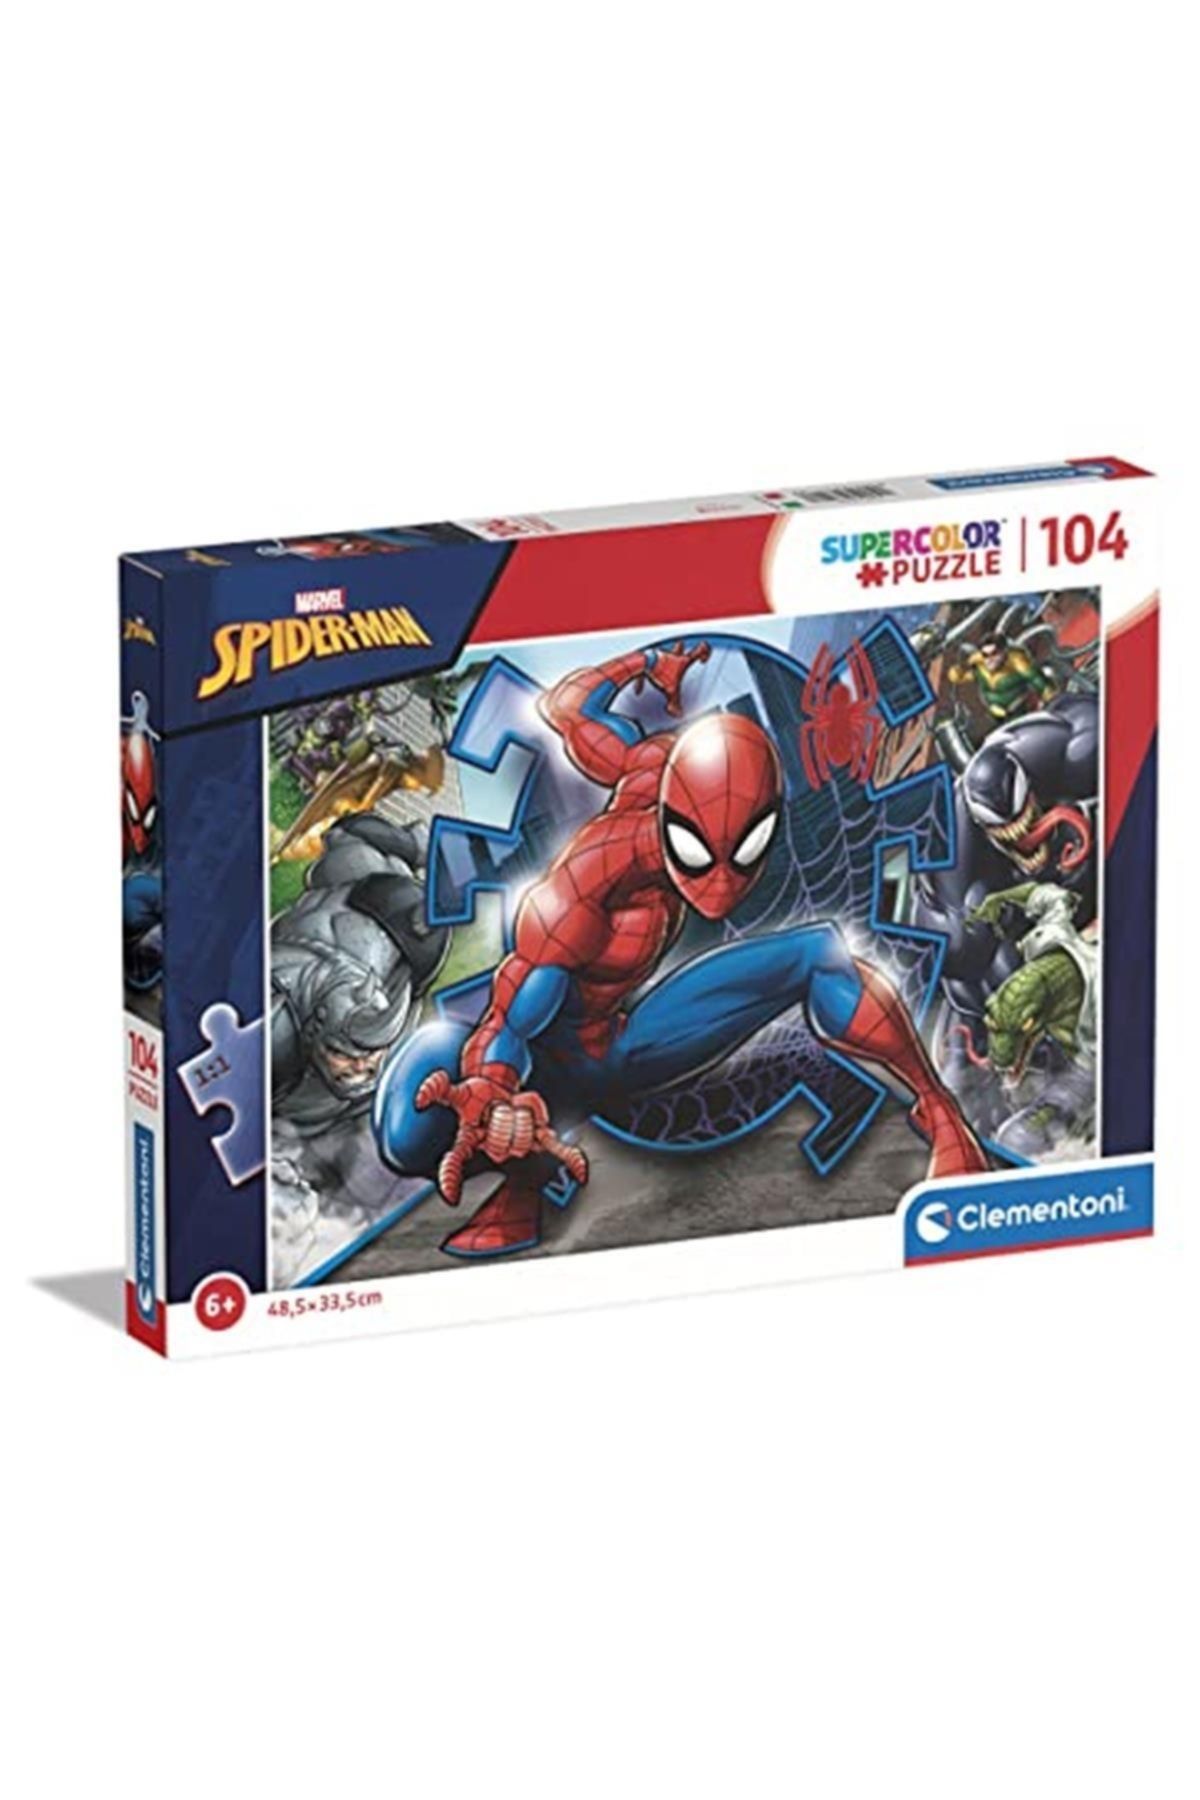 Clementoni Marka: Clementoni 27116 Supercolor Puzzle Marvel Spiderman, 104 Parça Kategori: Puzzle